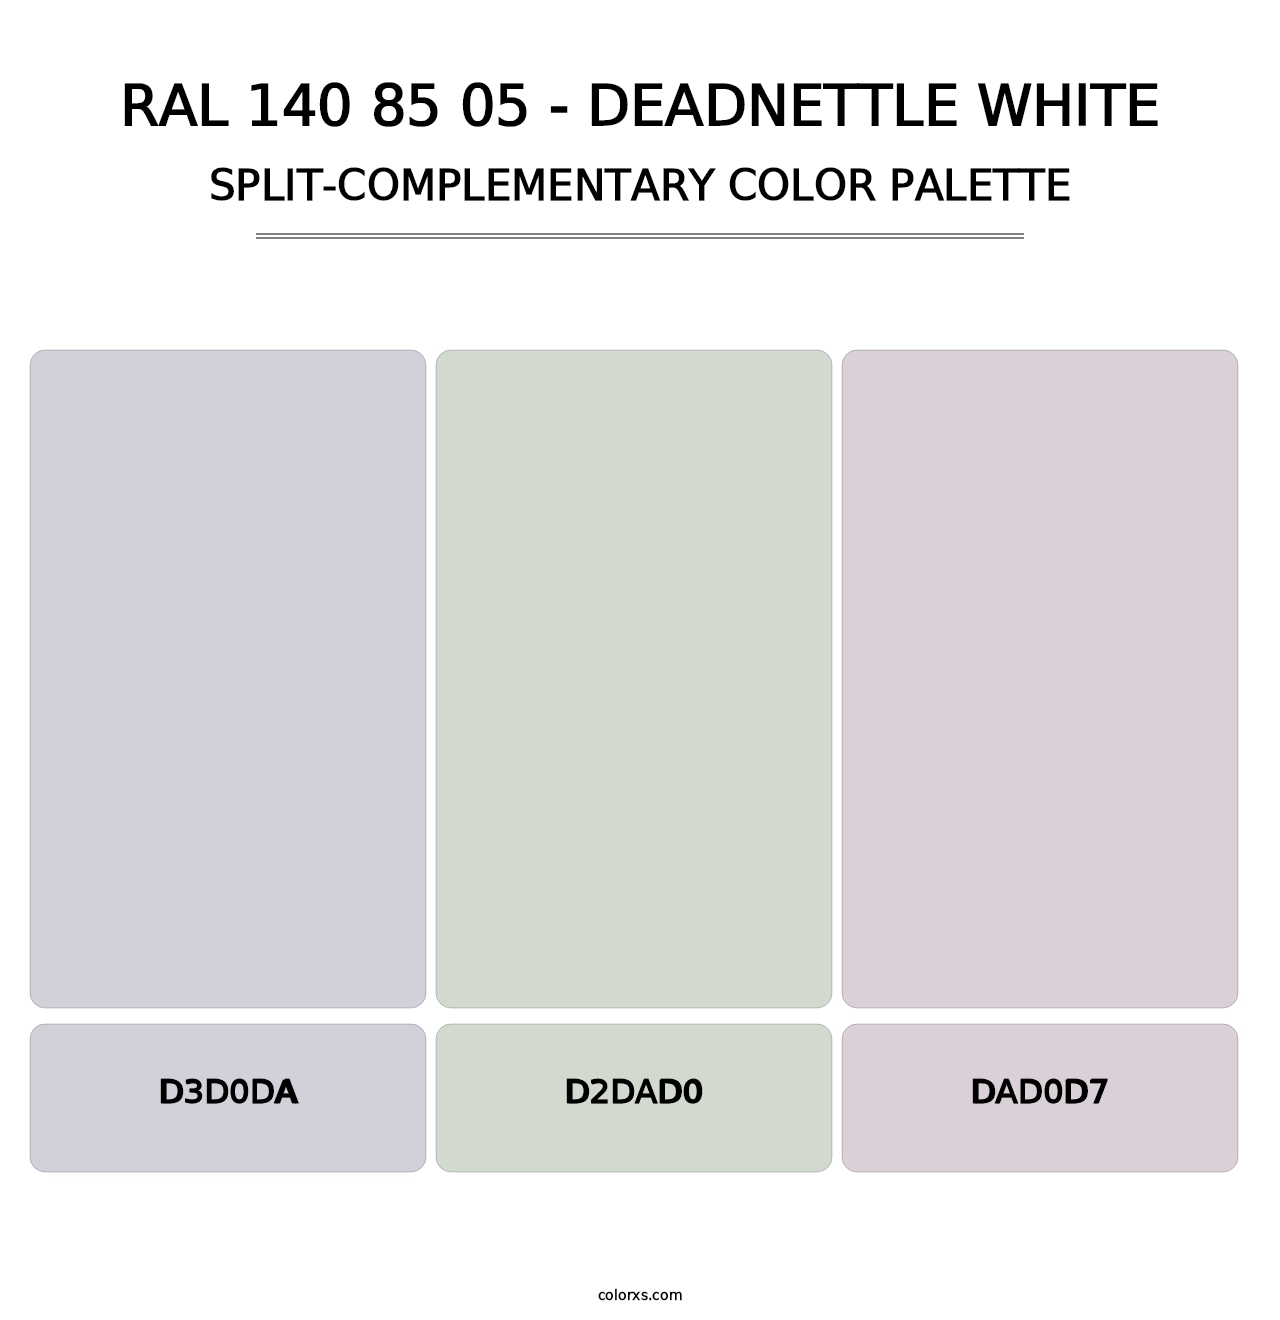 RAL 140 85 05 - Deadnettle White - Split-Complementary Color Palette